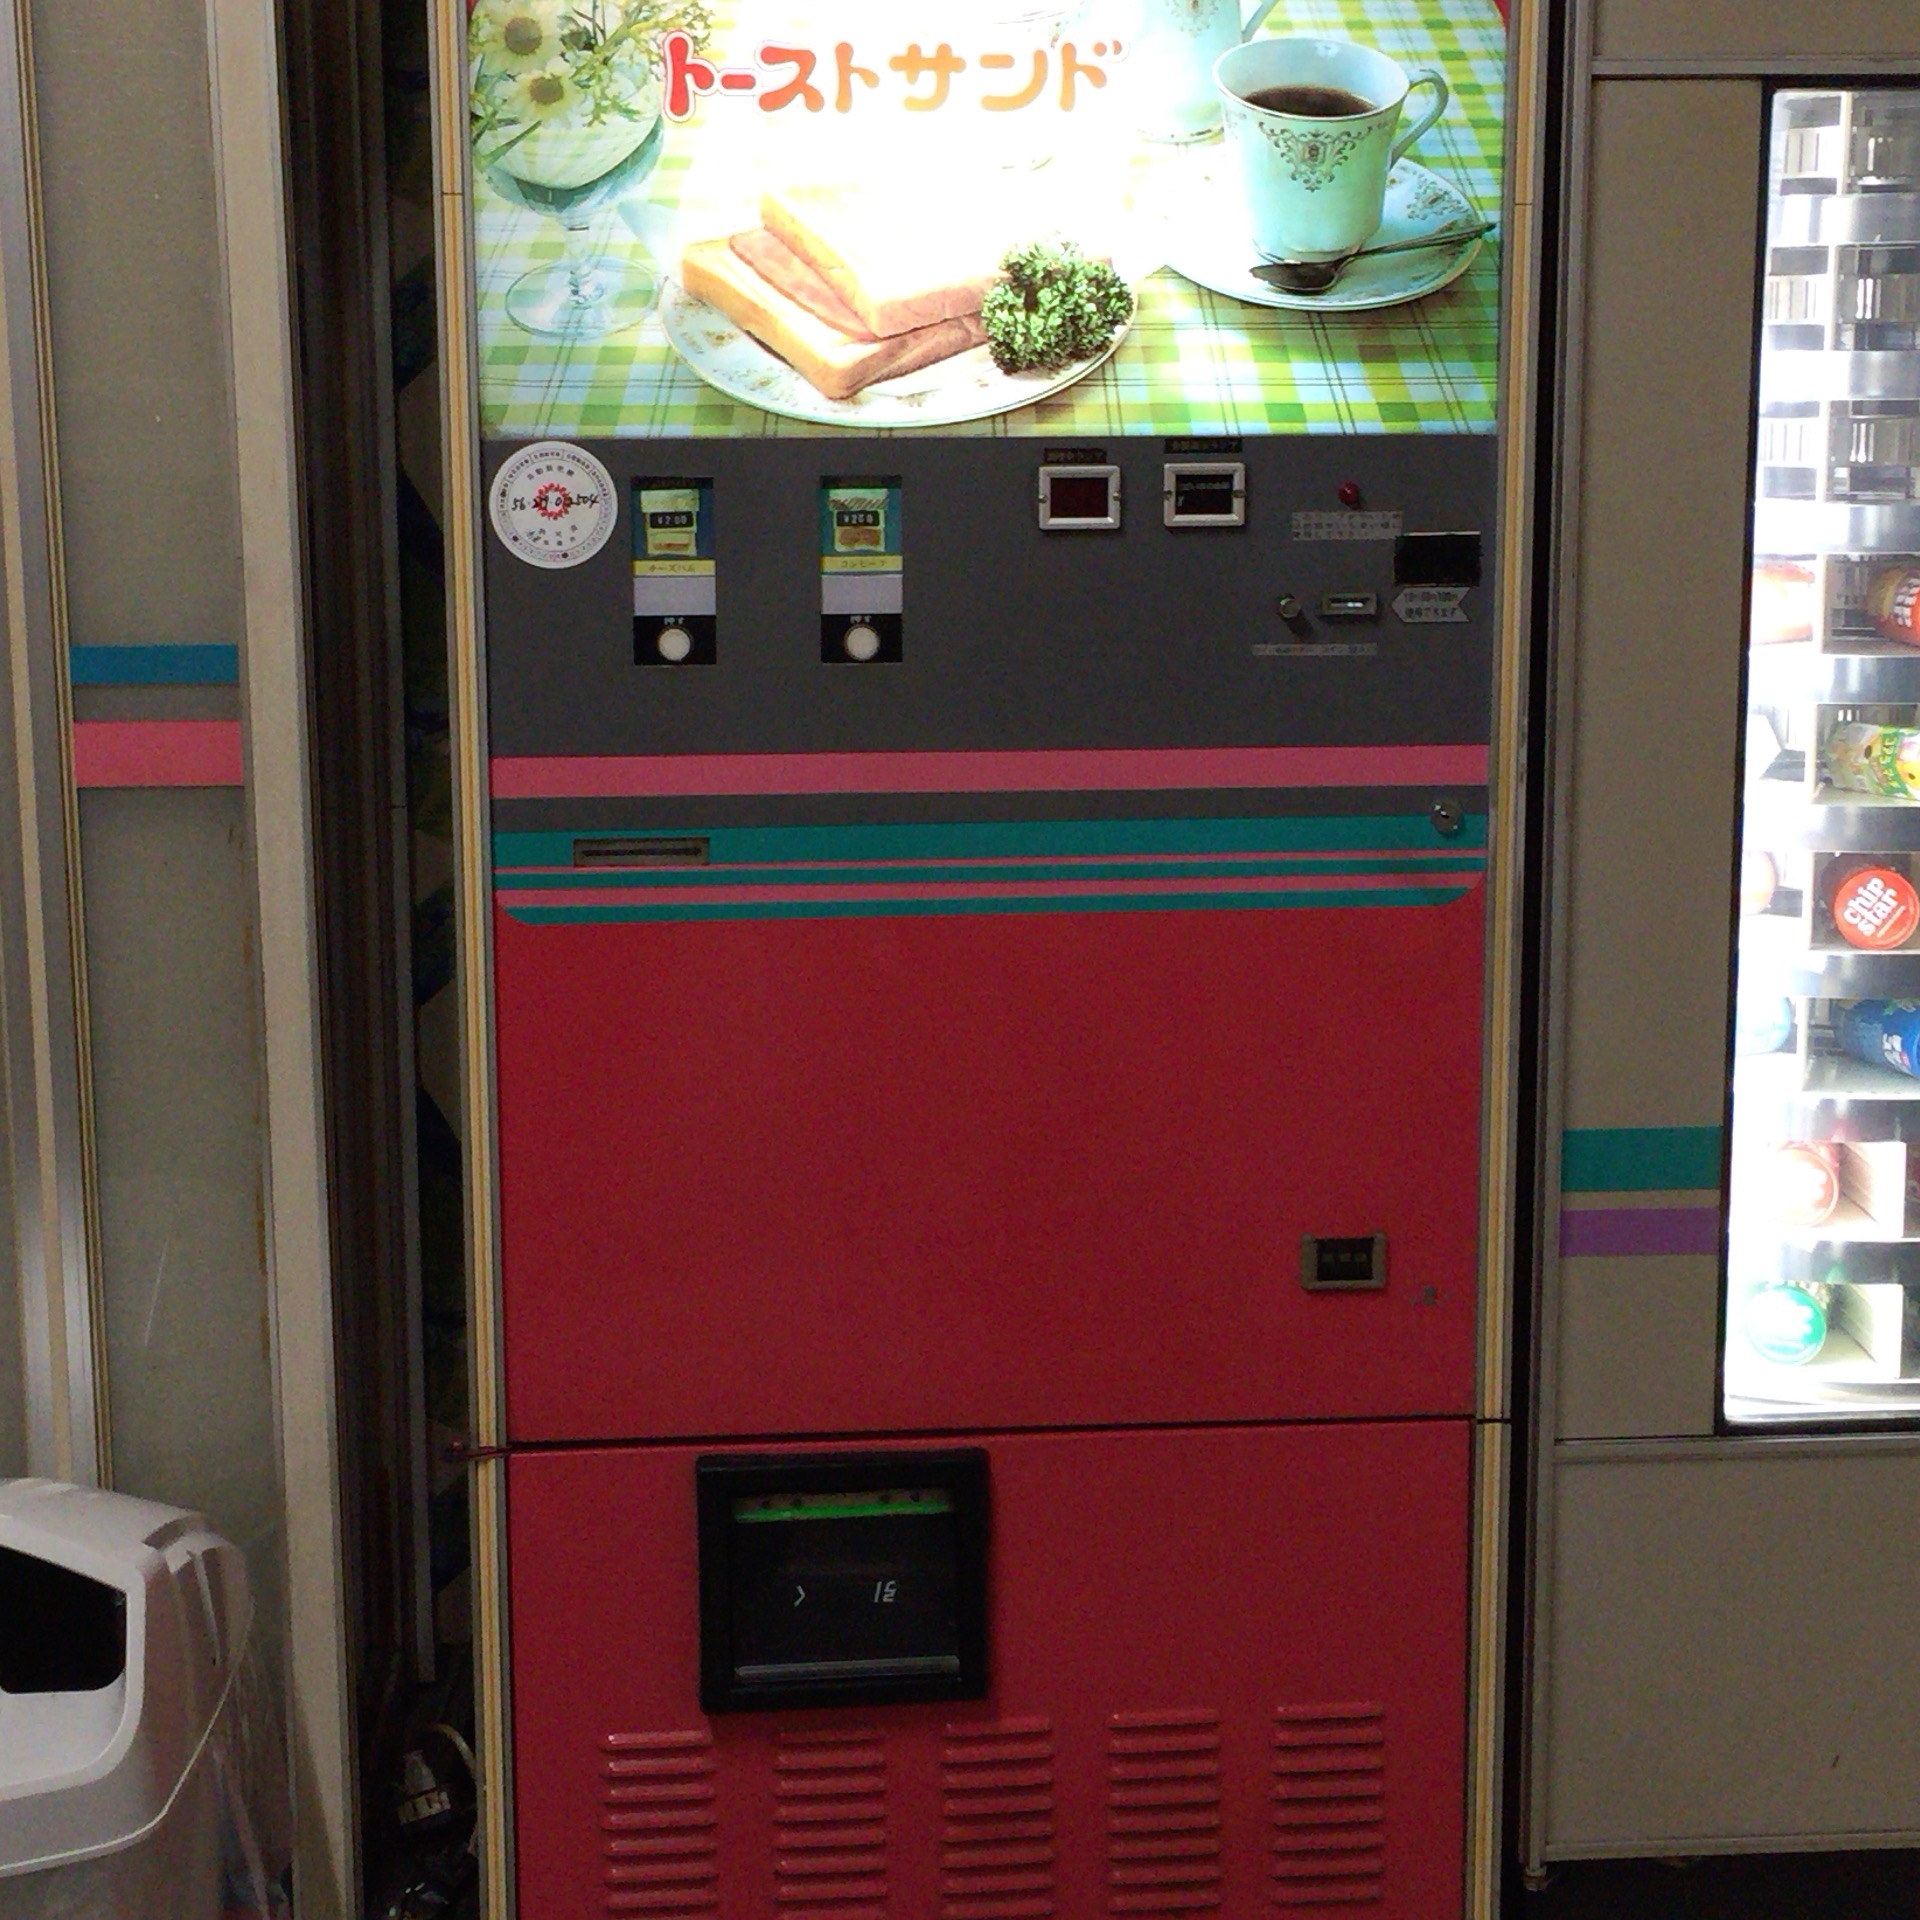 オートパーラー上尾の食品自動販売機で『天ぷらそば』と『トーストサンド』を食べてきた